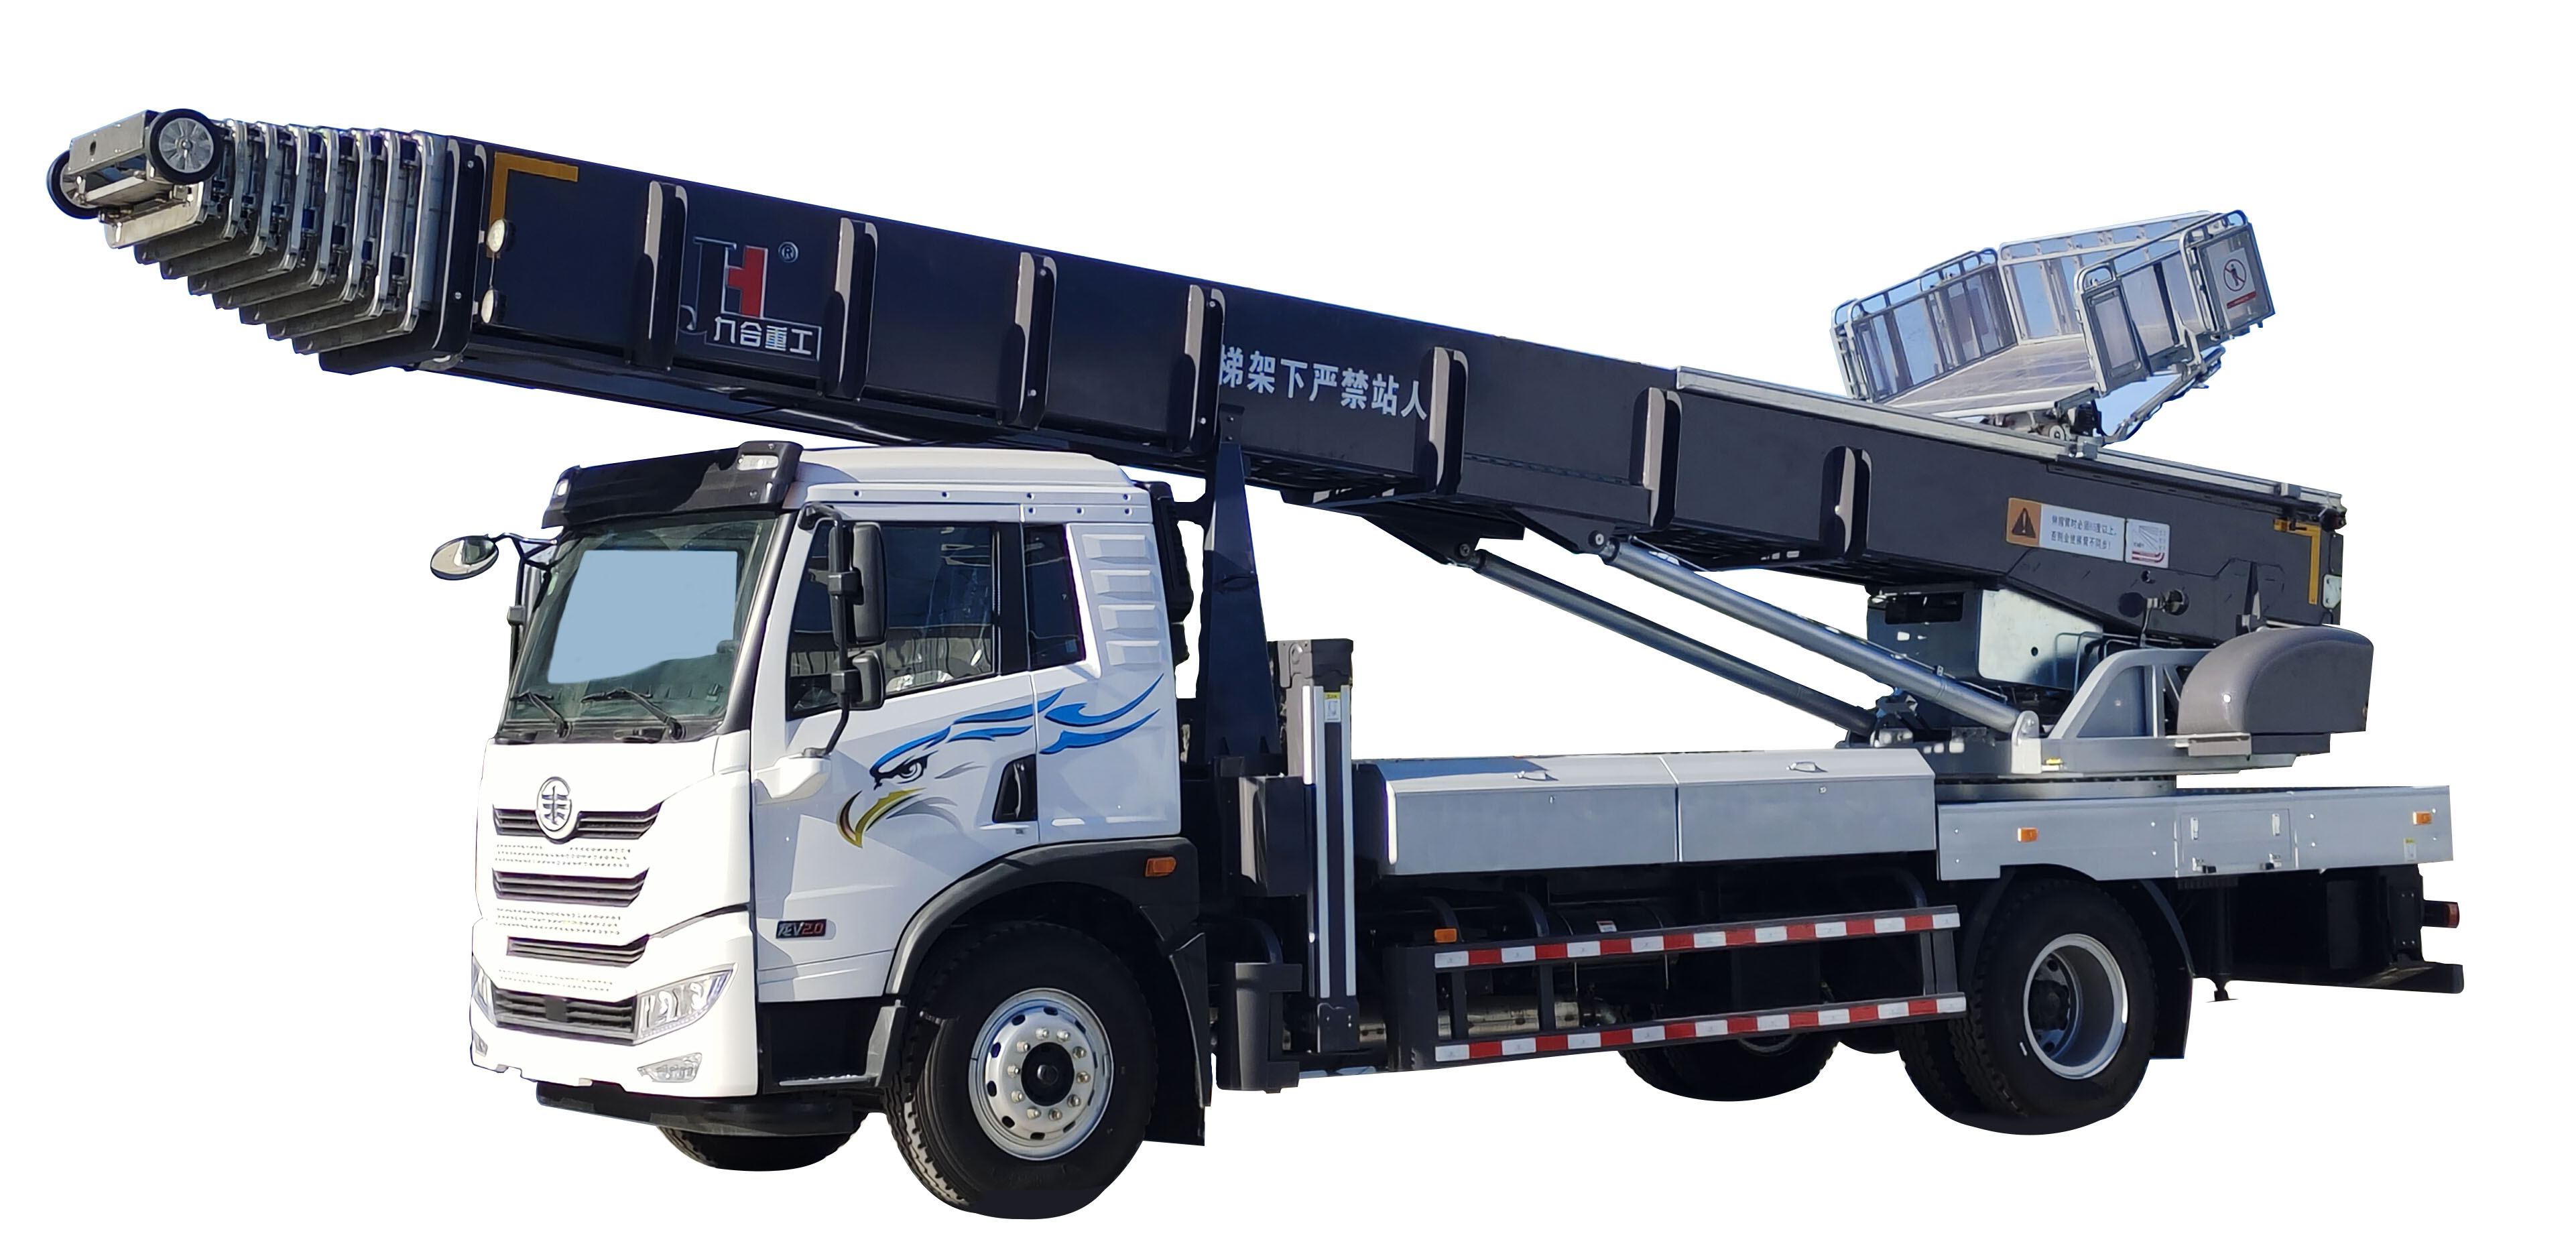 Ladder Lift Truck